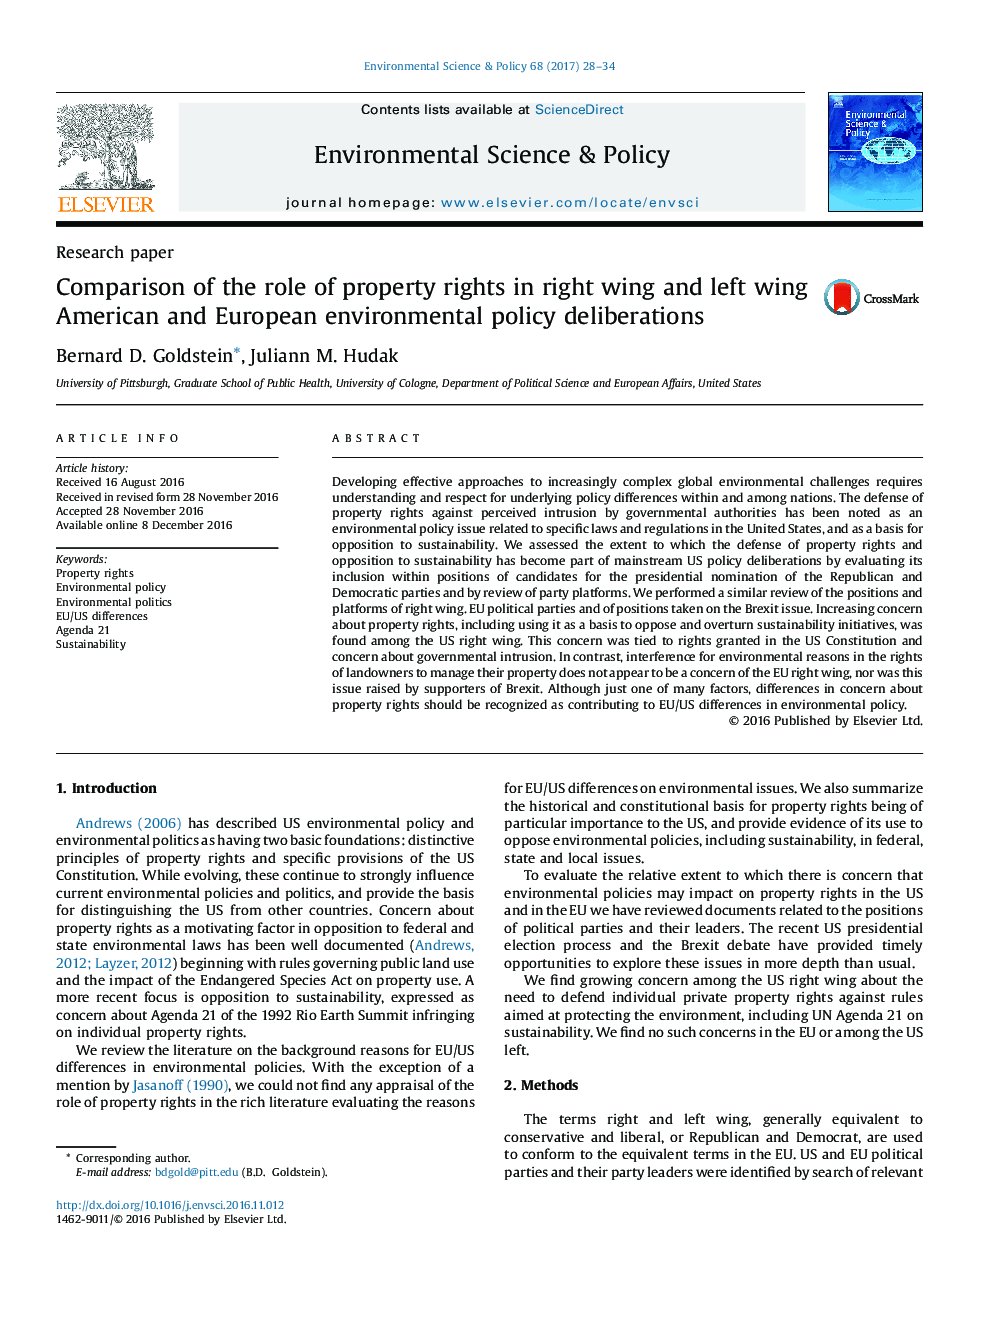 مقایسه نقش حقوق مالکیت در بحث های سیاست های زیست محیطی آمریکا و اروپا در چپ راست و چپ 